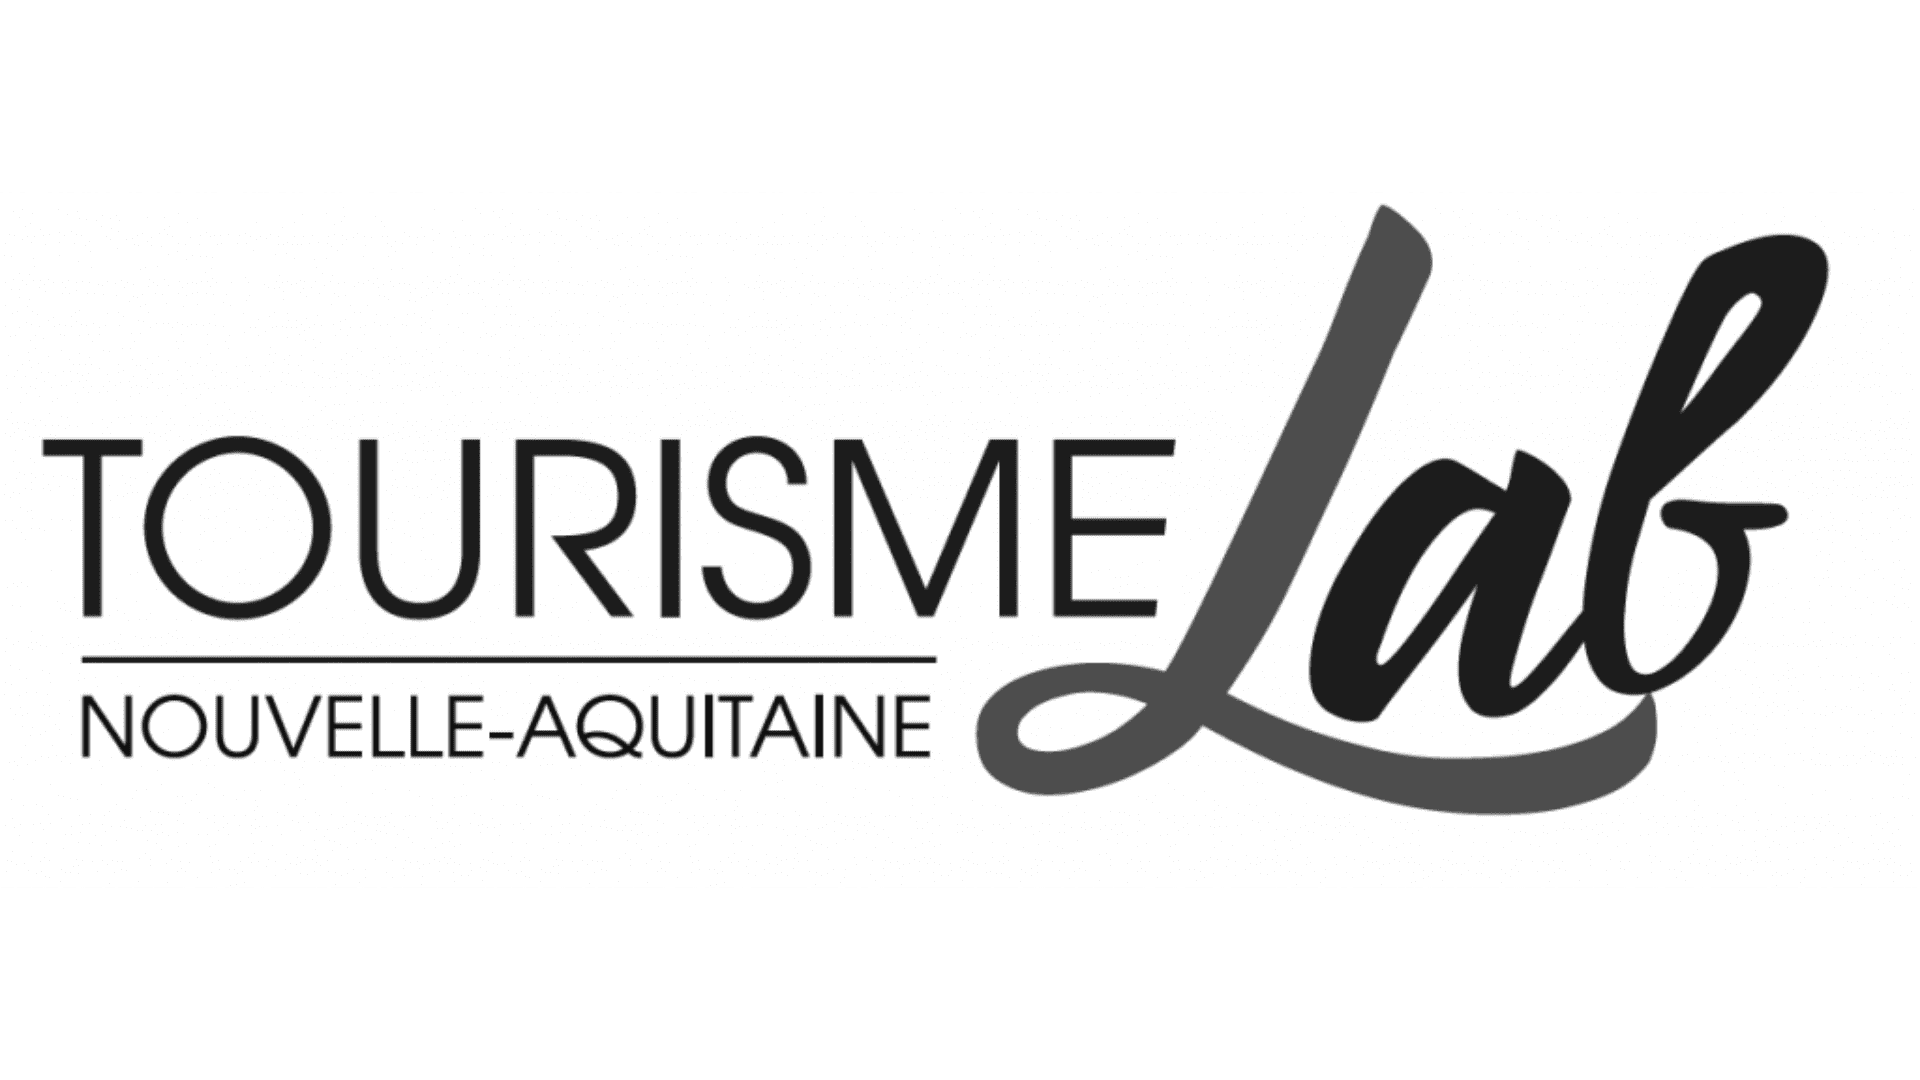 Toursime Lab Nouvelle Aquitaine